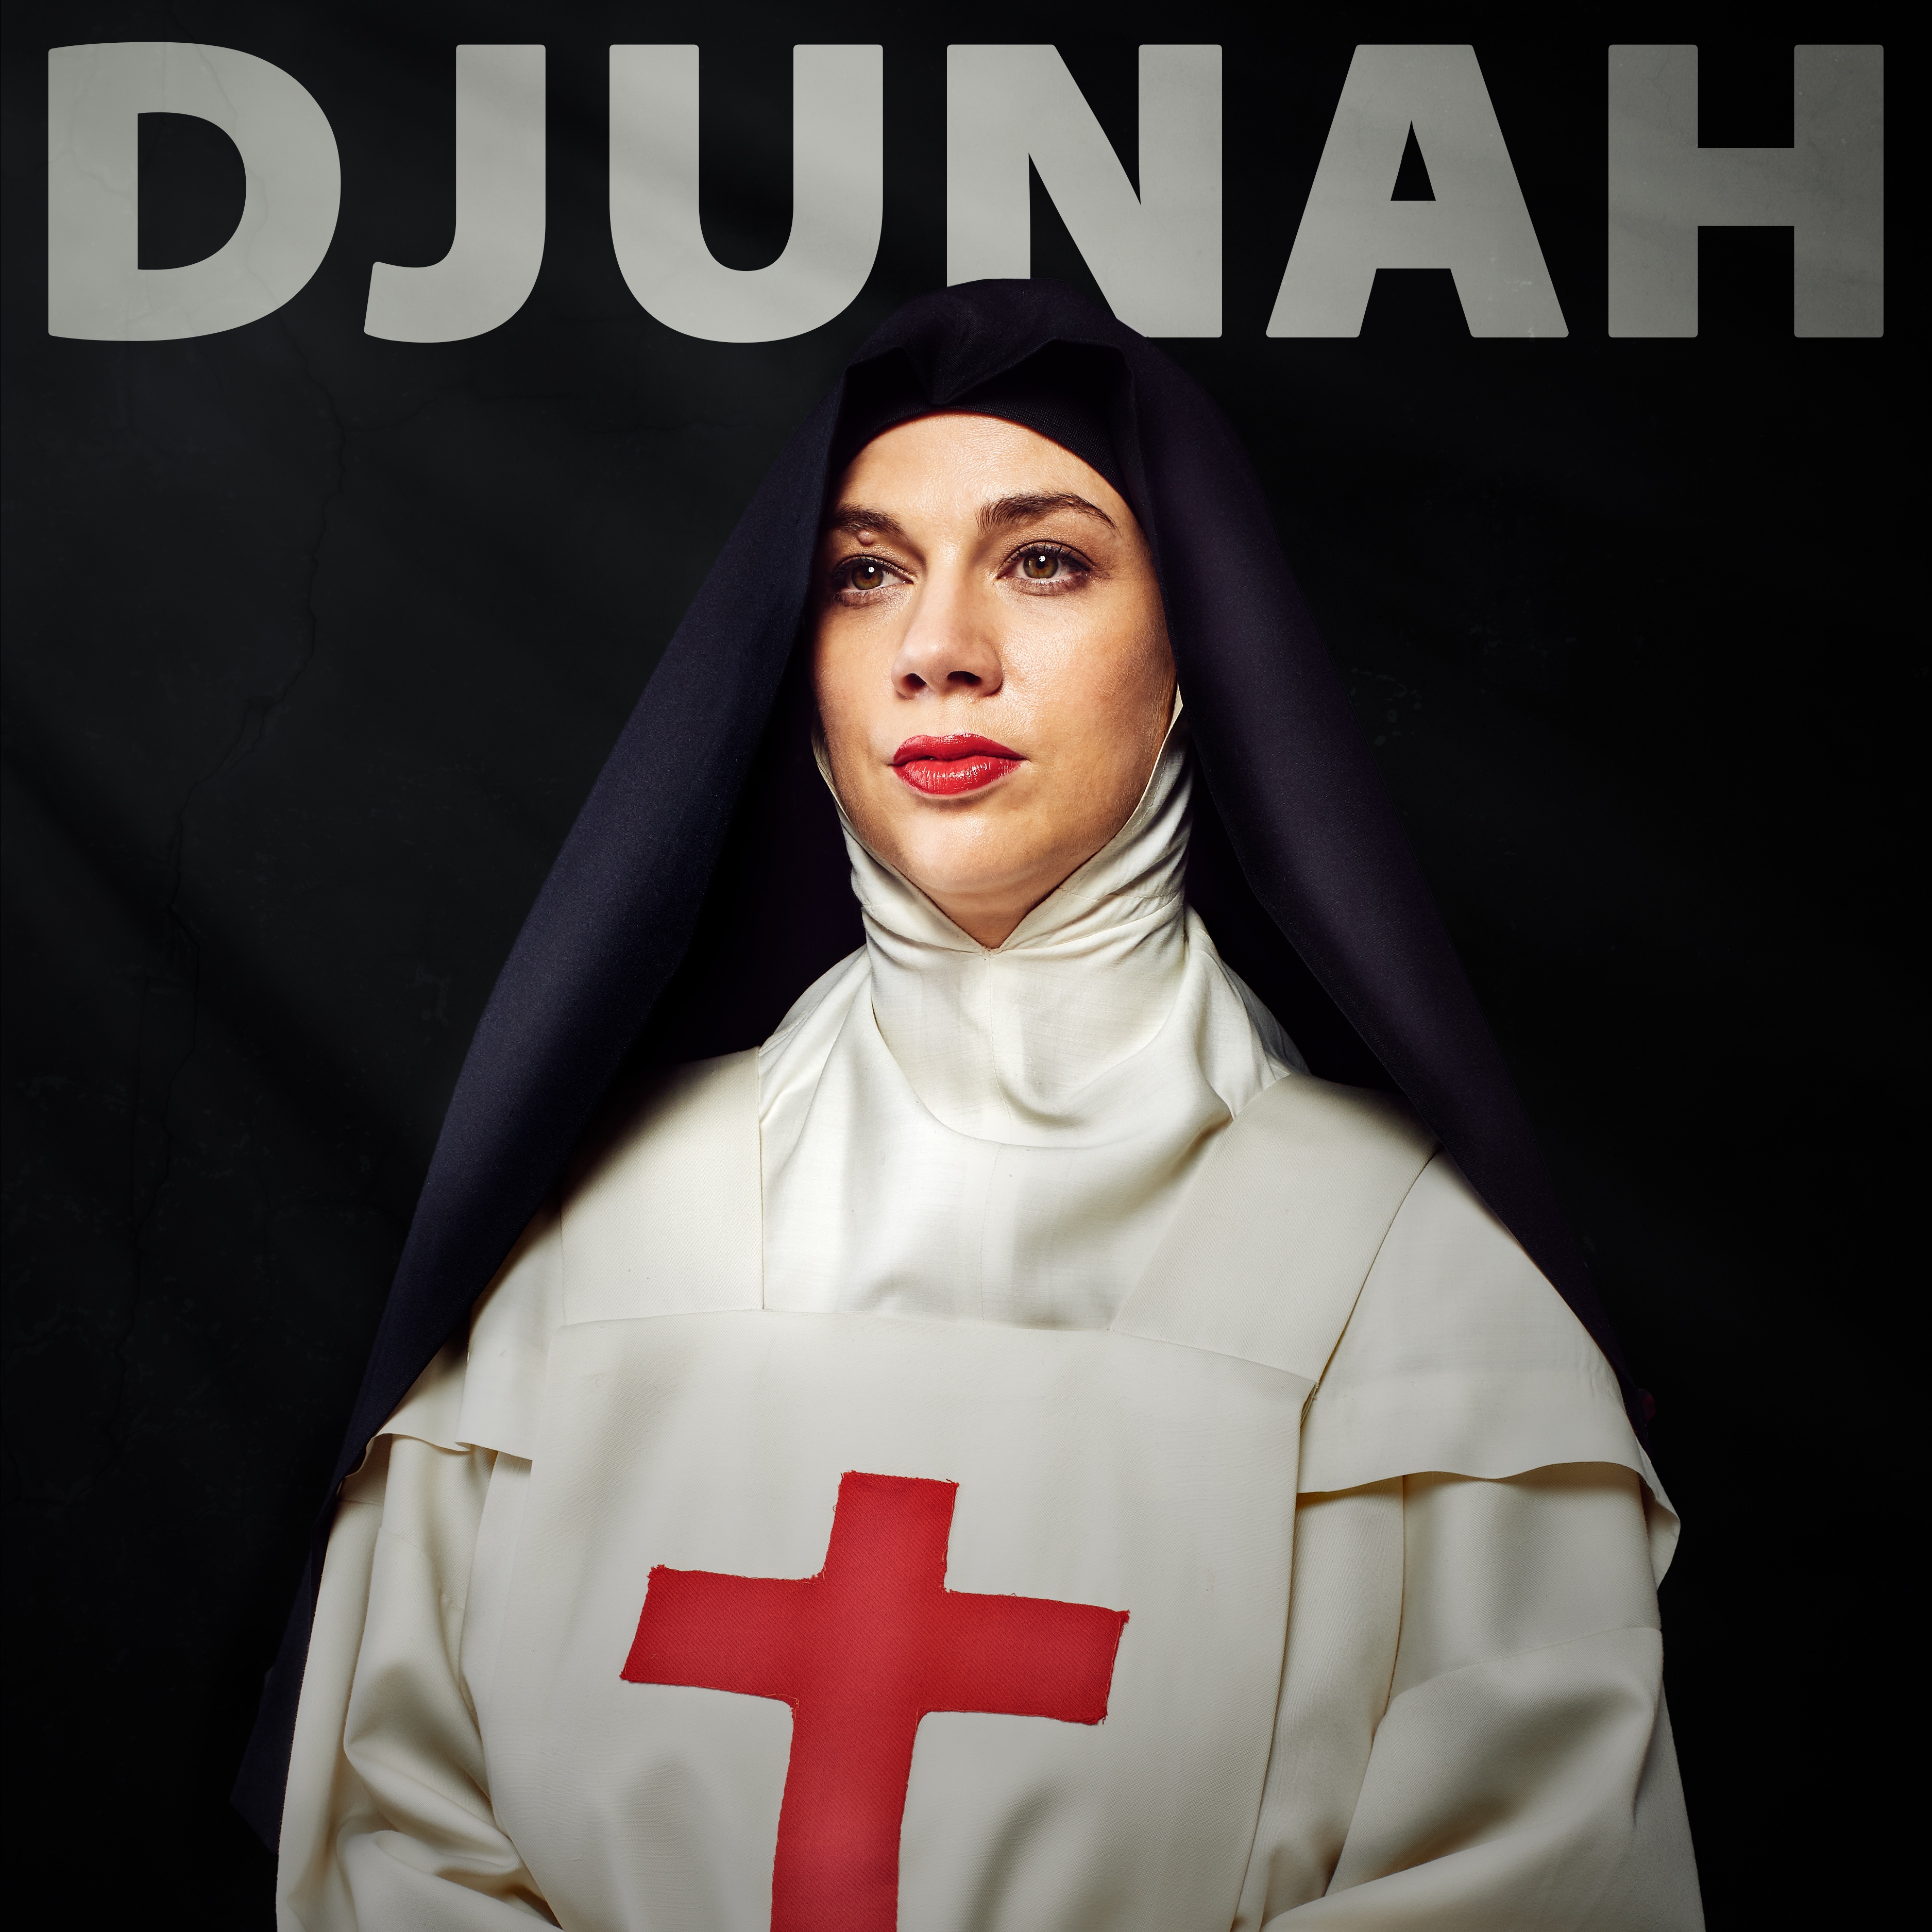 djunah nurse and nun